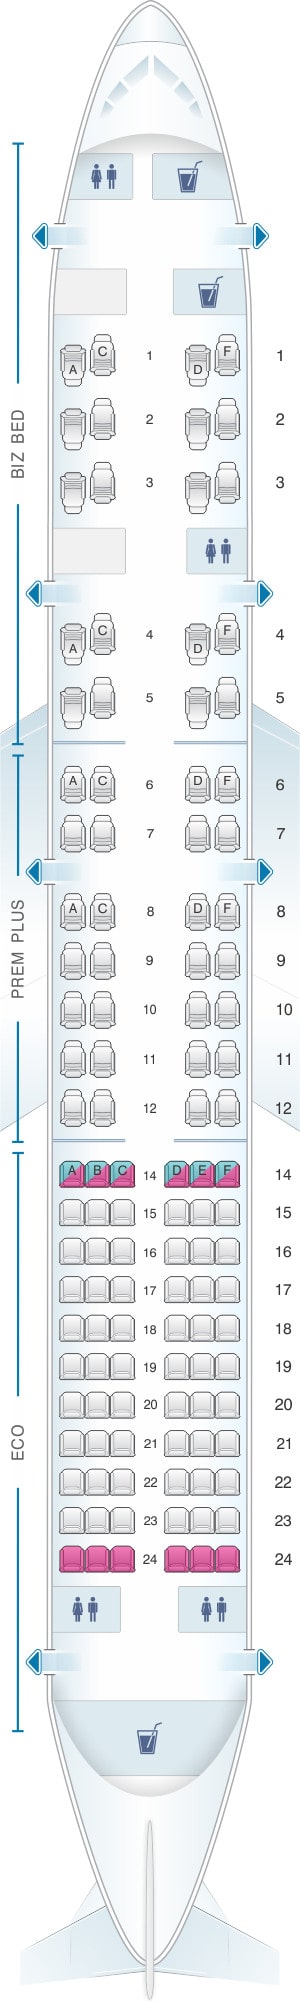 British Airways 757 Seat Map